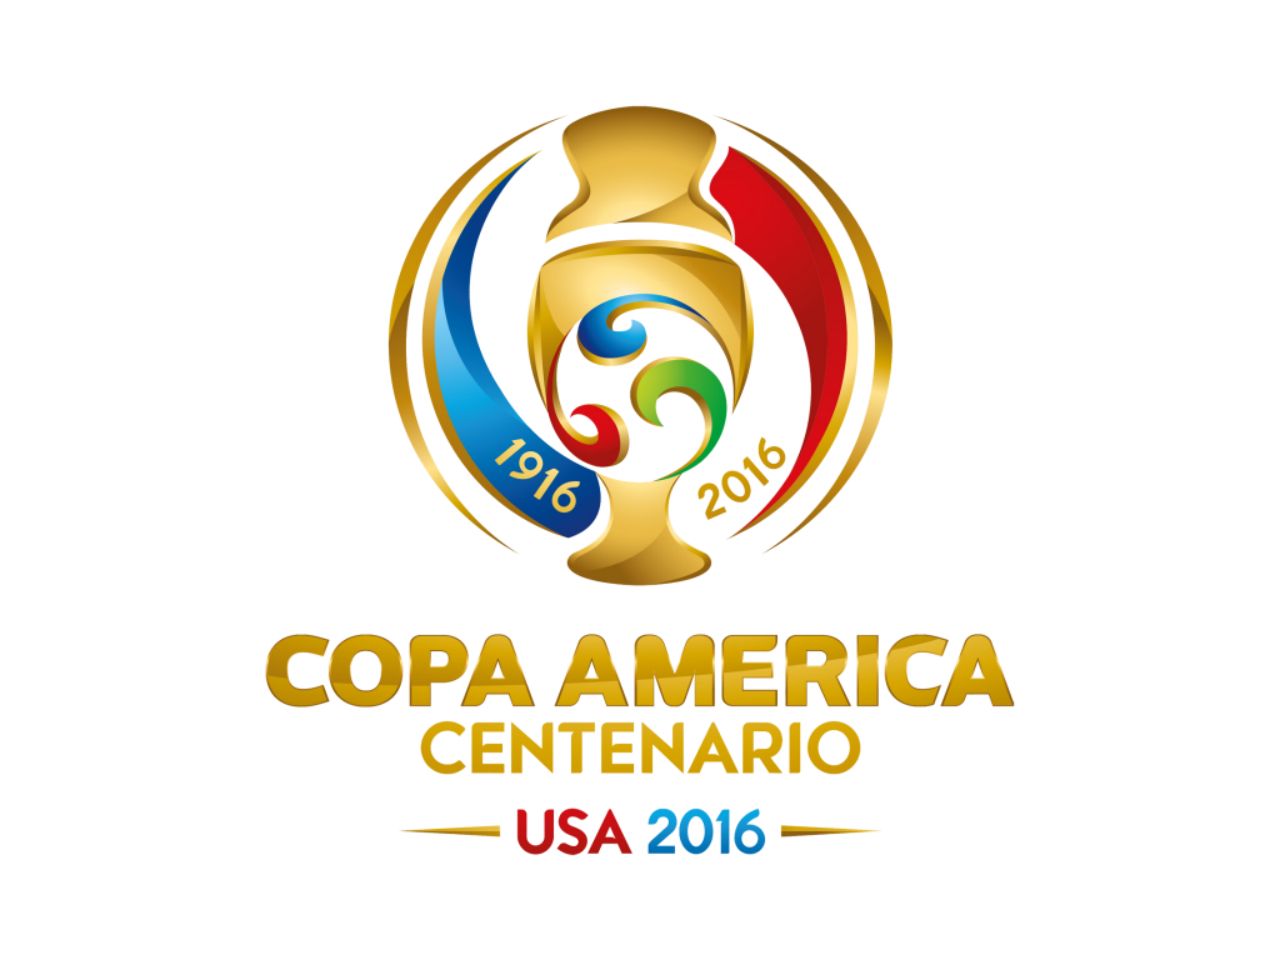 Calendario de la Copa América 2016